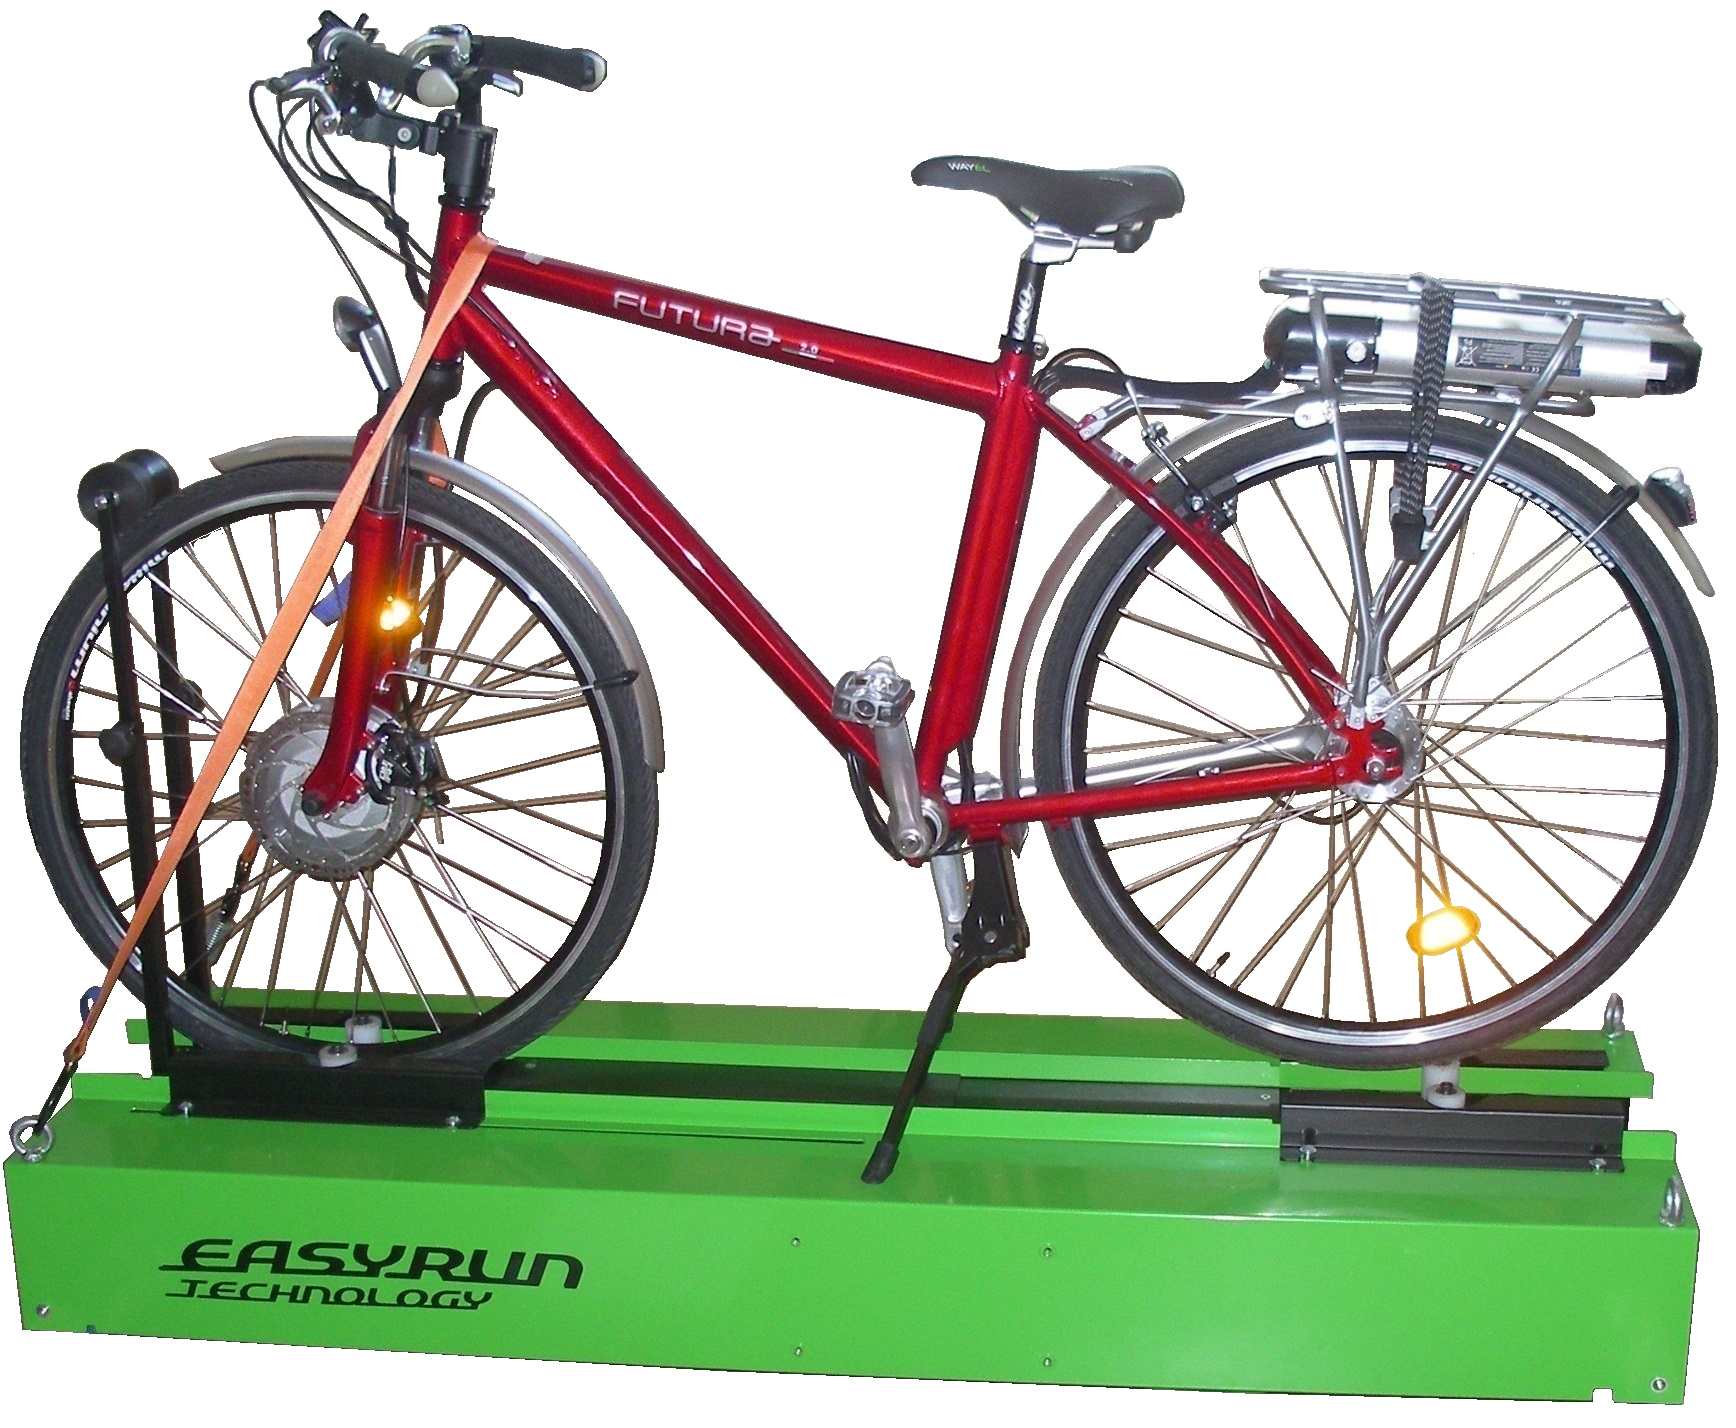 easyrun banco prova speciale bici elettrica